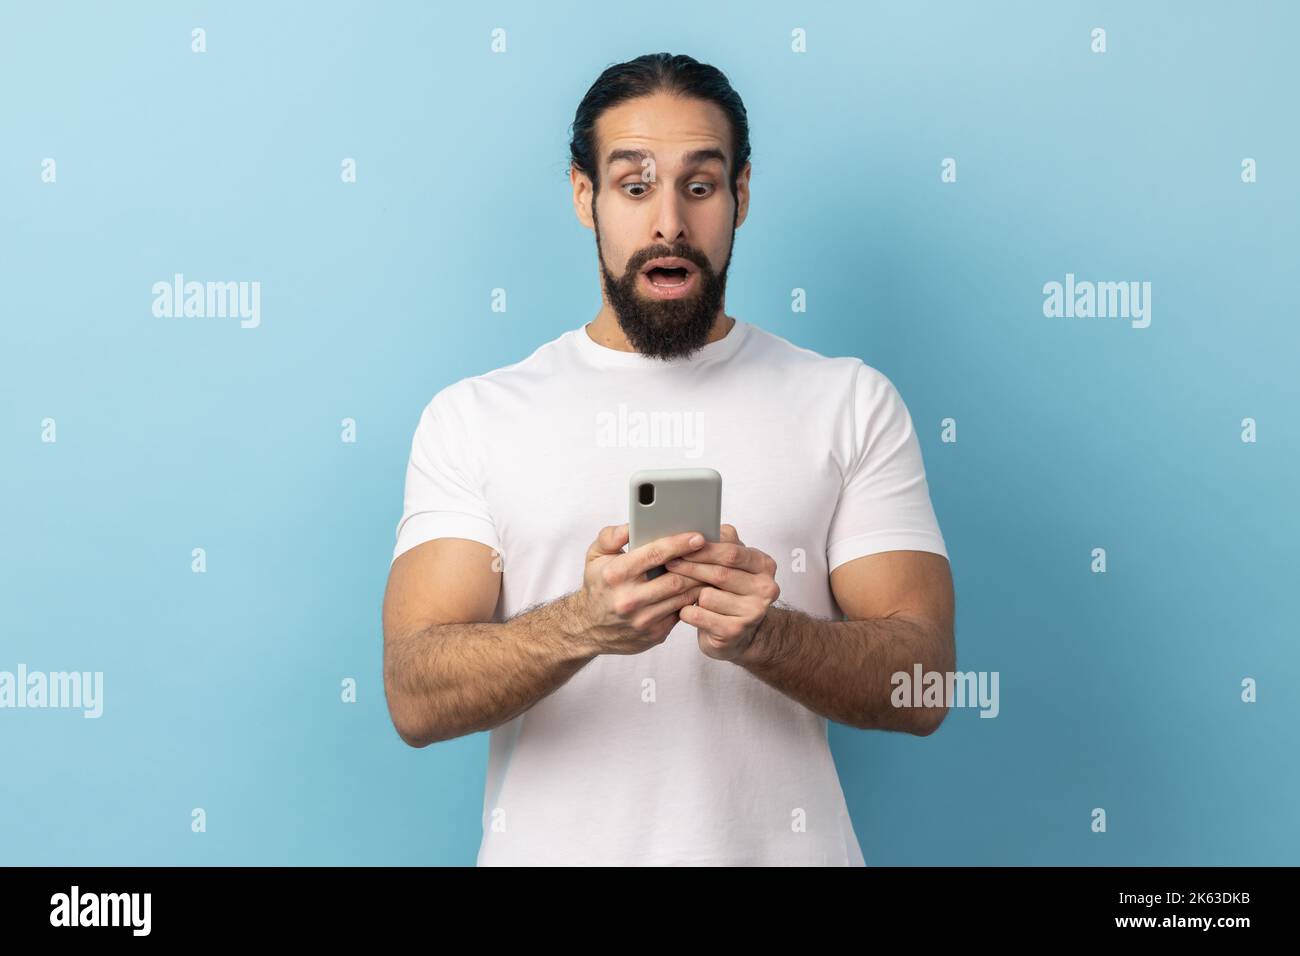 Porträt eines überraschten Mannes mit Bart und weißem T-Shirt, der einen Schock ausdrückt, während er das Handy benutzt, im Internet sucht und erstaunliche Nachrichten zeigt. Innenaufnahme des Studios isoliert auf blauem Hintergrund. Stockfoto